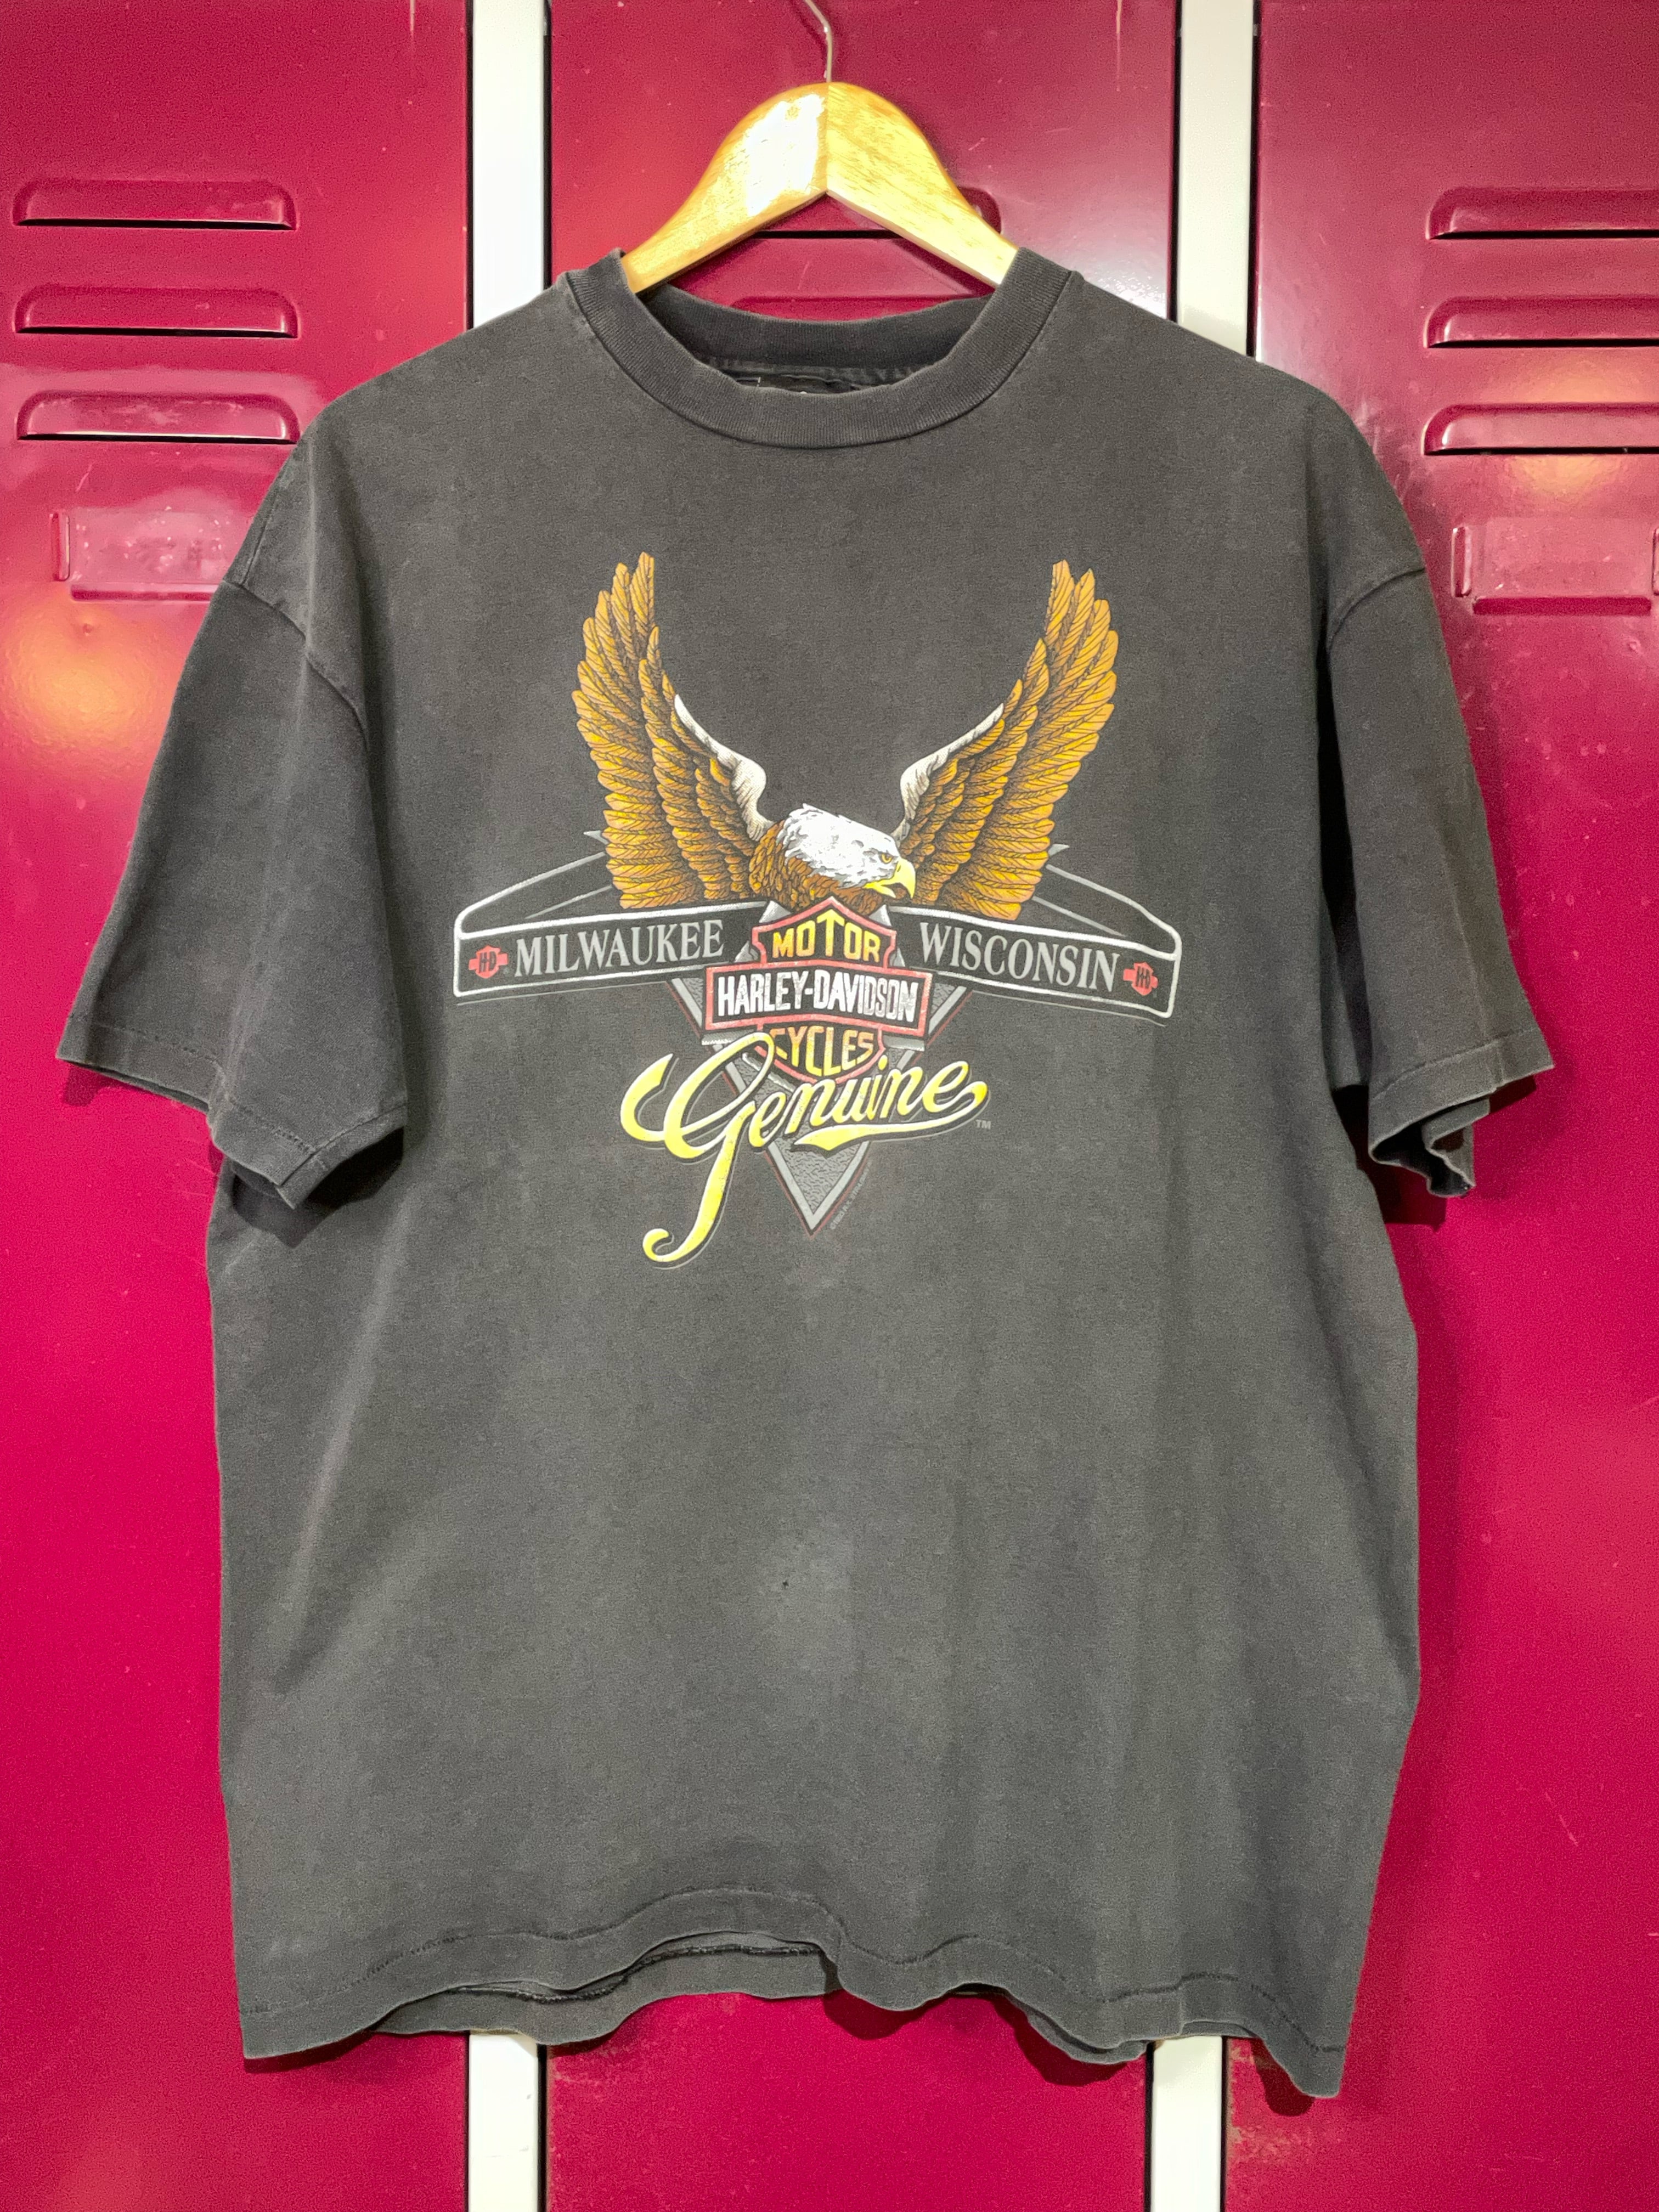 Tee-Shirt homme manche courte Harley-Davidson